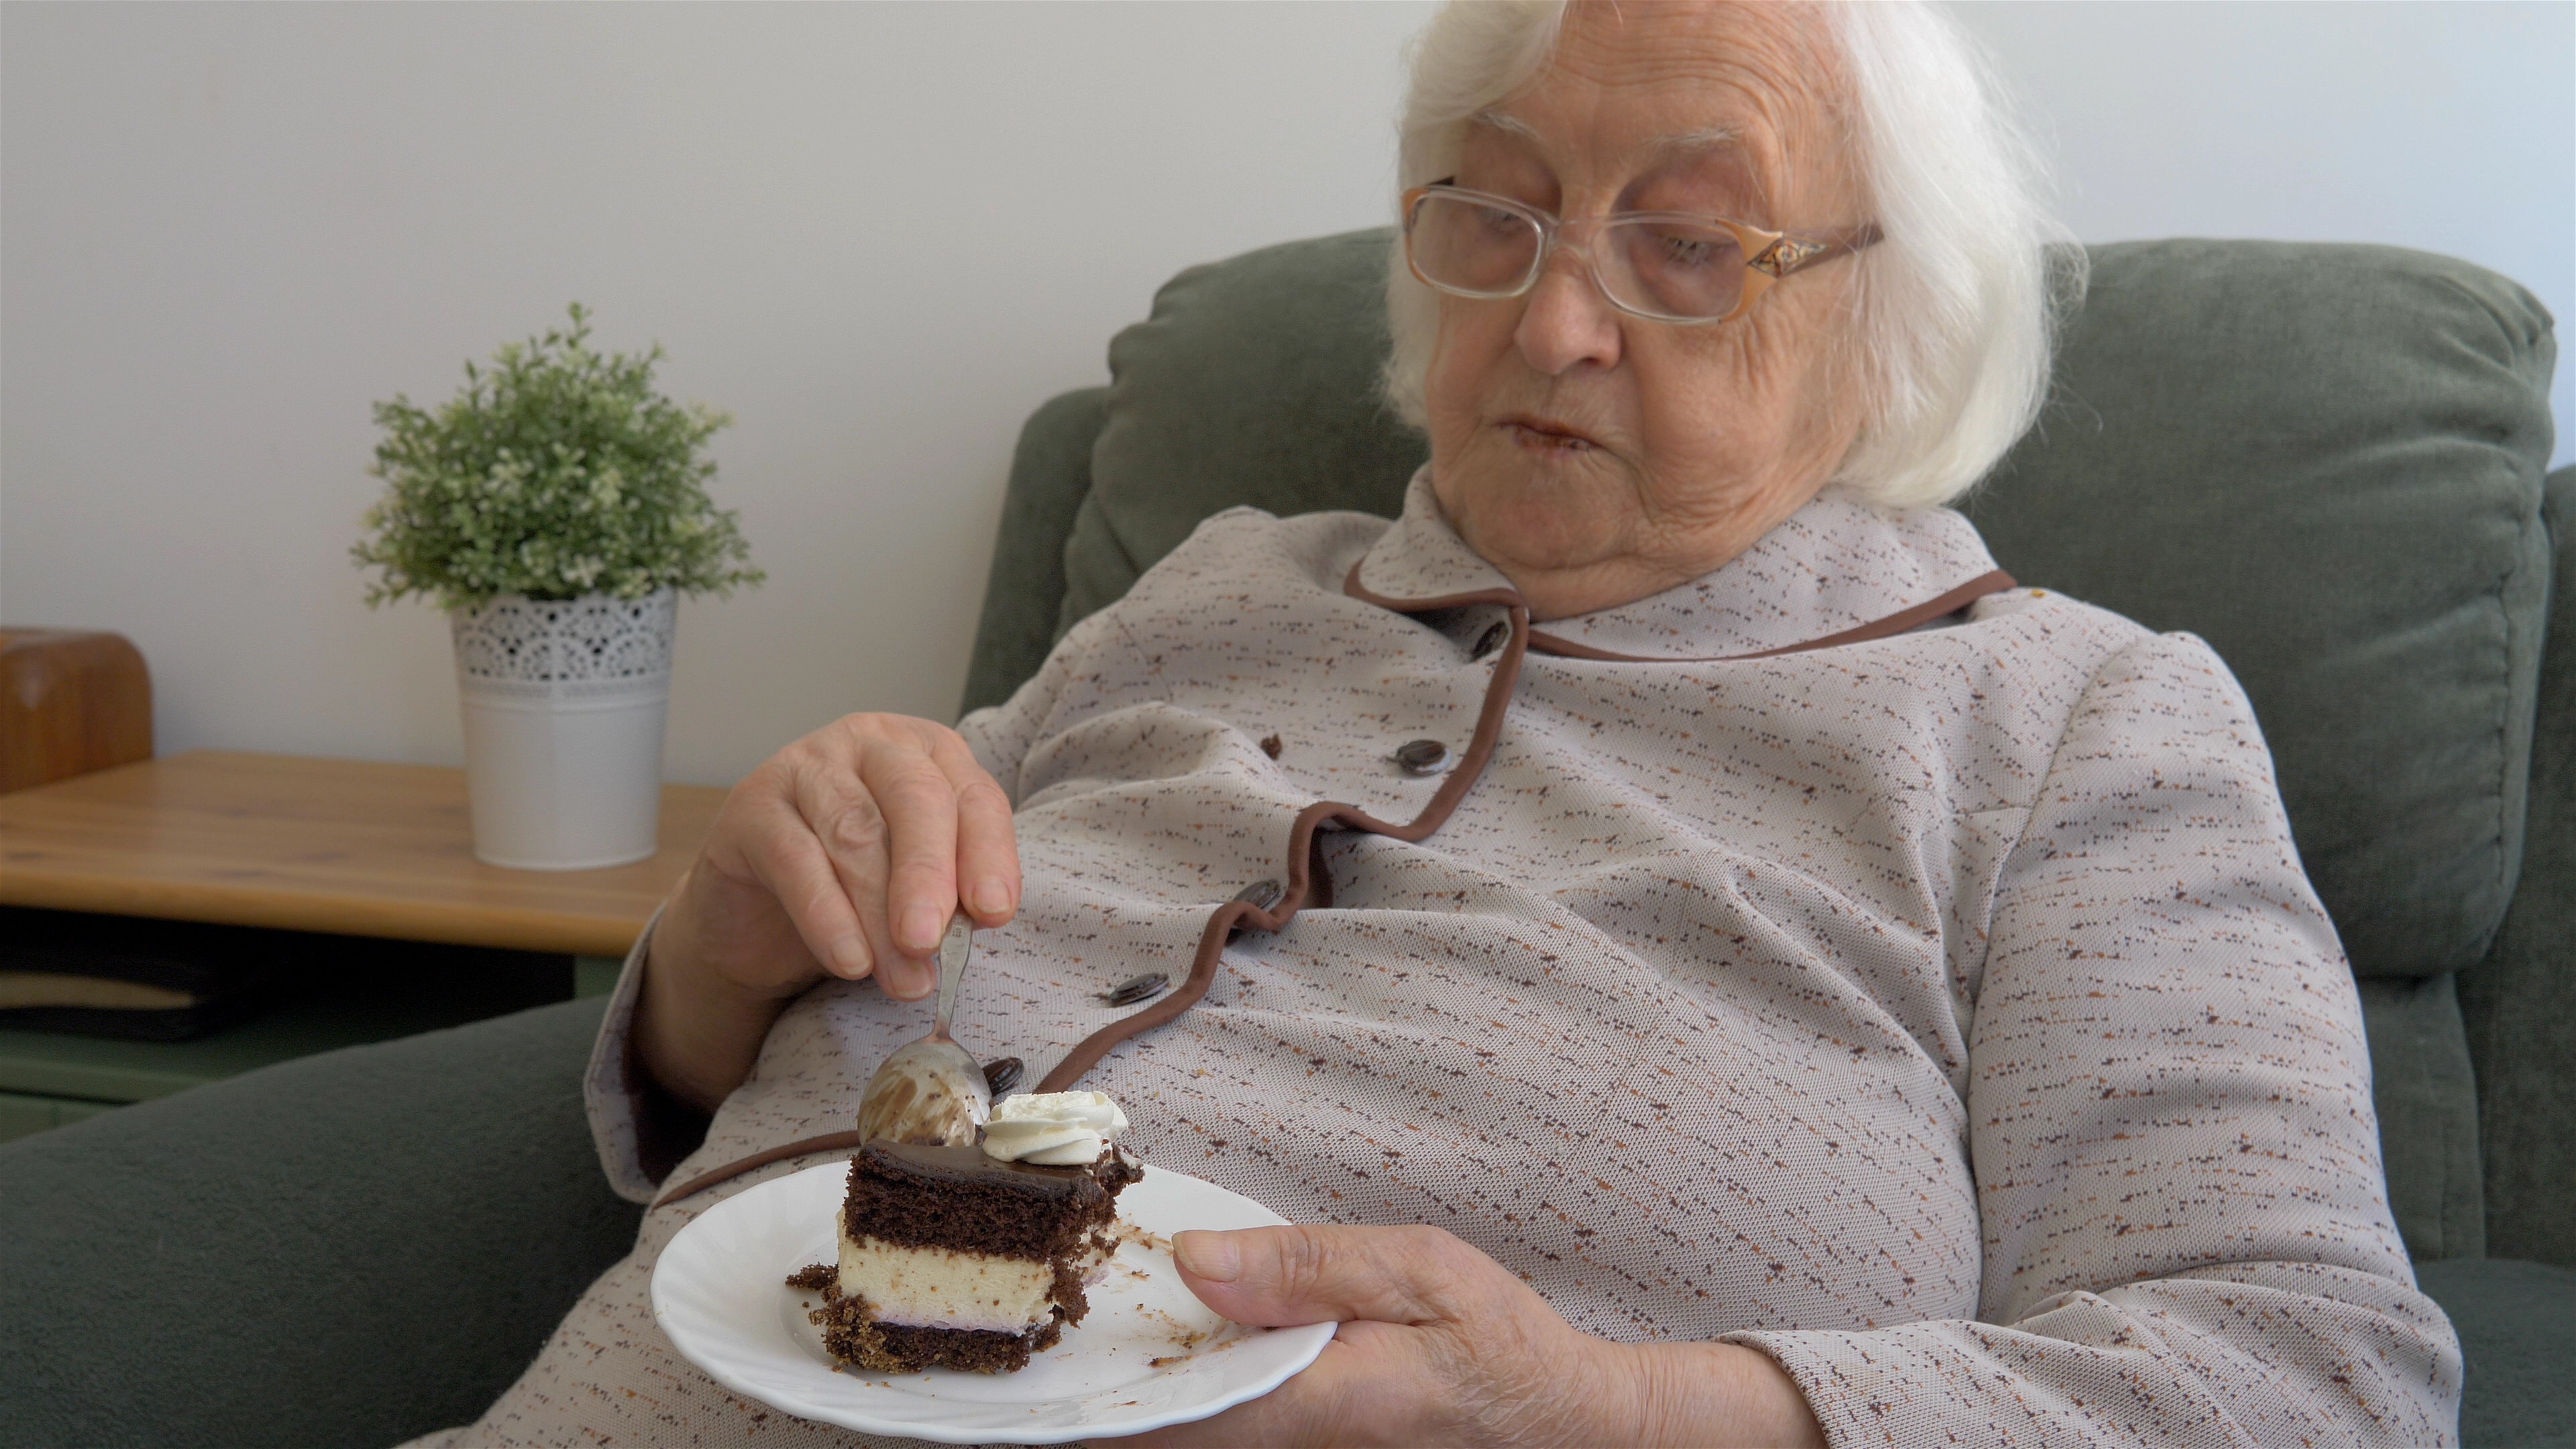 Les femmes âgées qui mangent seules encourent un risque plus élevé de troubles cardiaques (Visuel Adobe Stock 316830788)